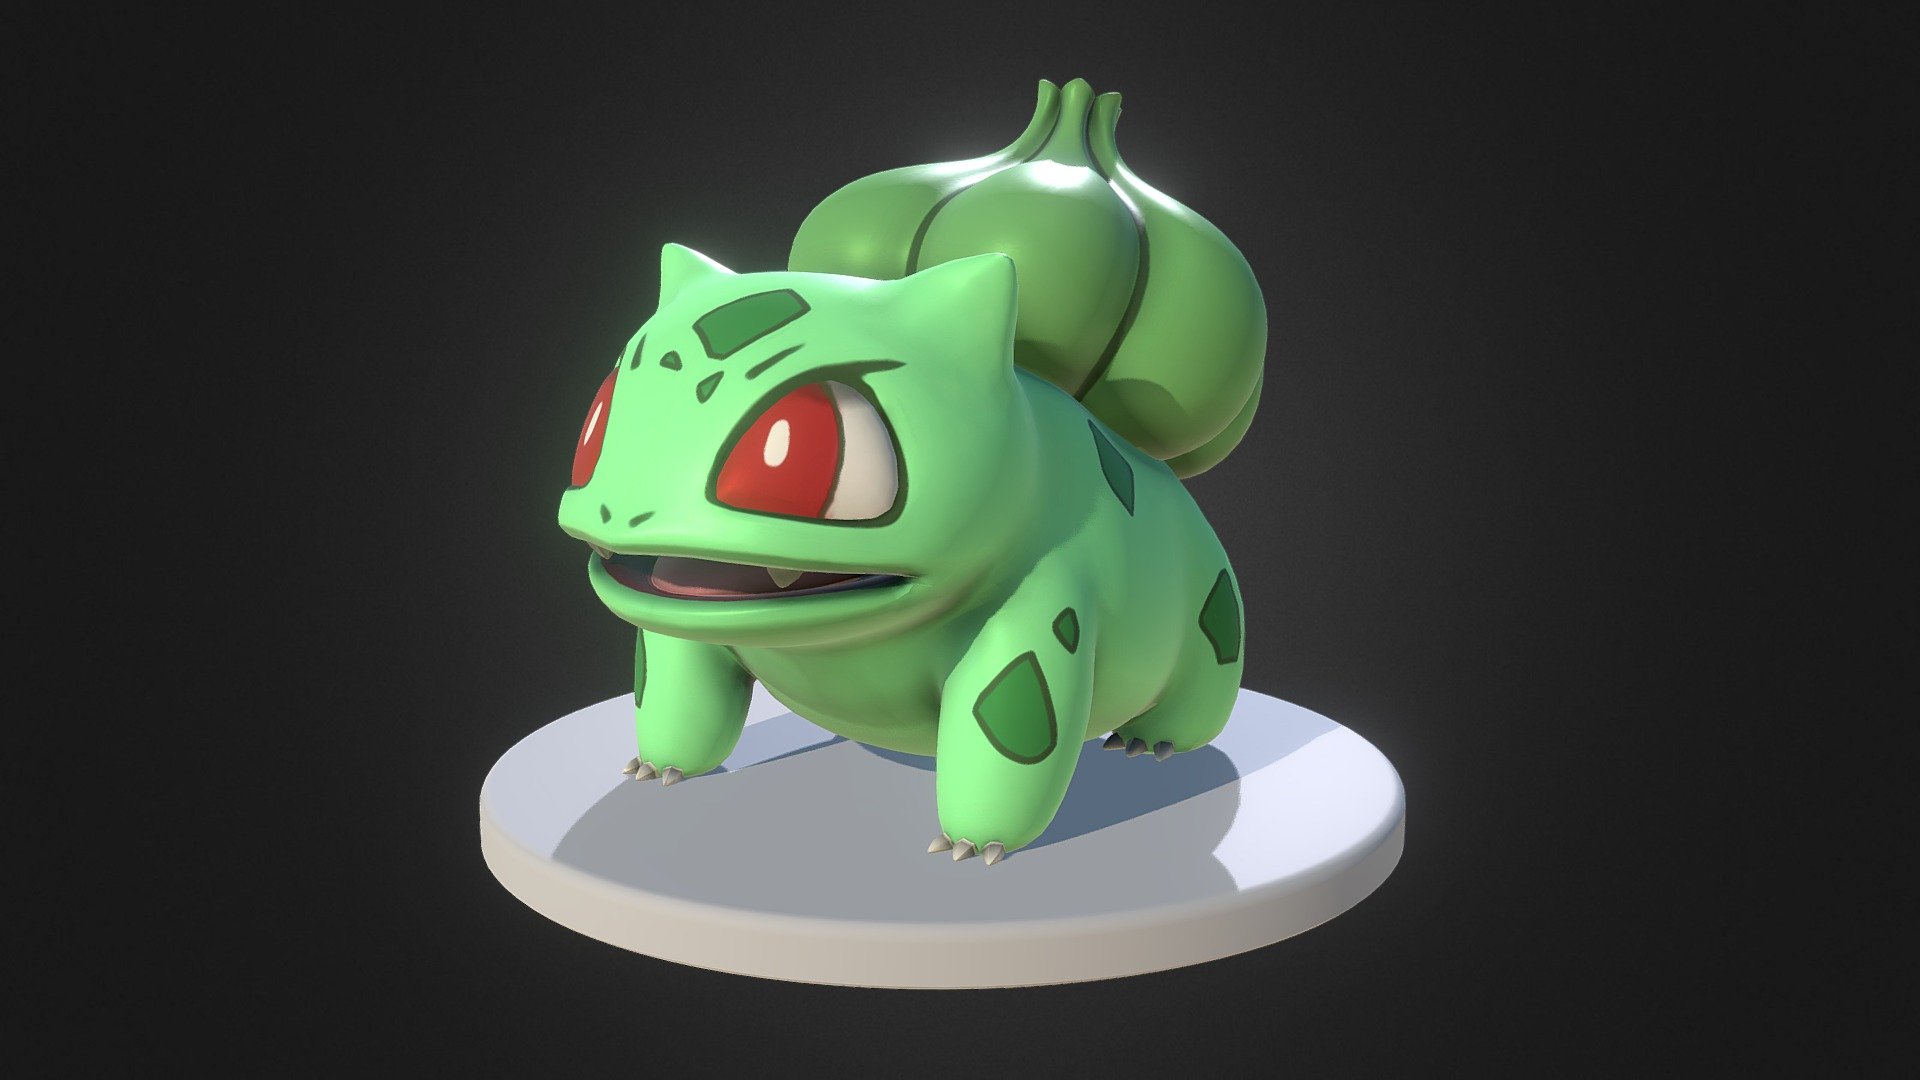 Pokemon Number 1 of 150 Bulbasaur - Bulbasaur - 3D model by 3dlogicus 3d model